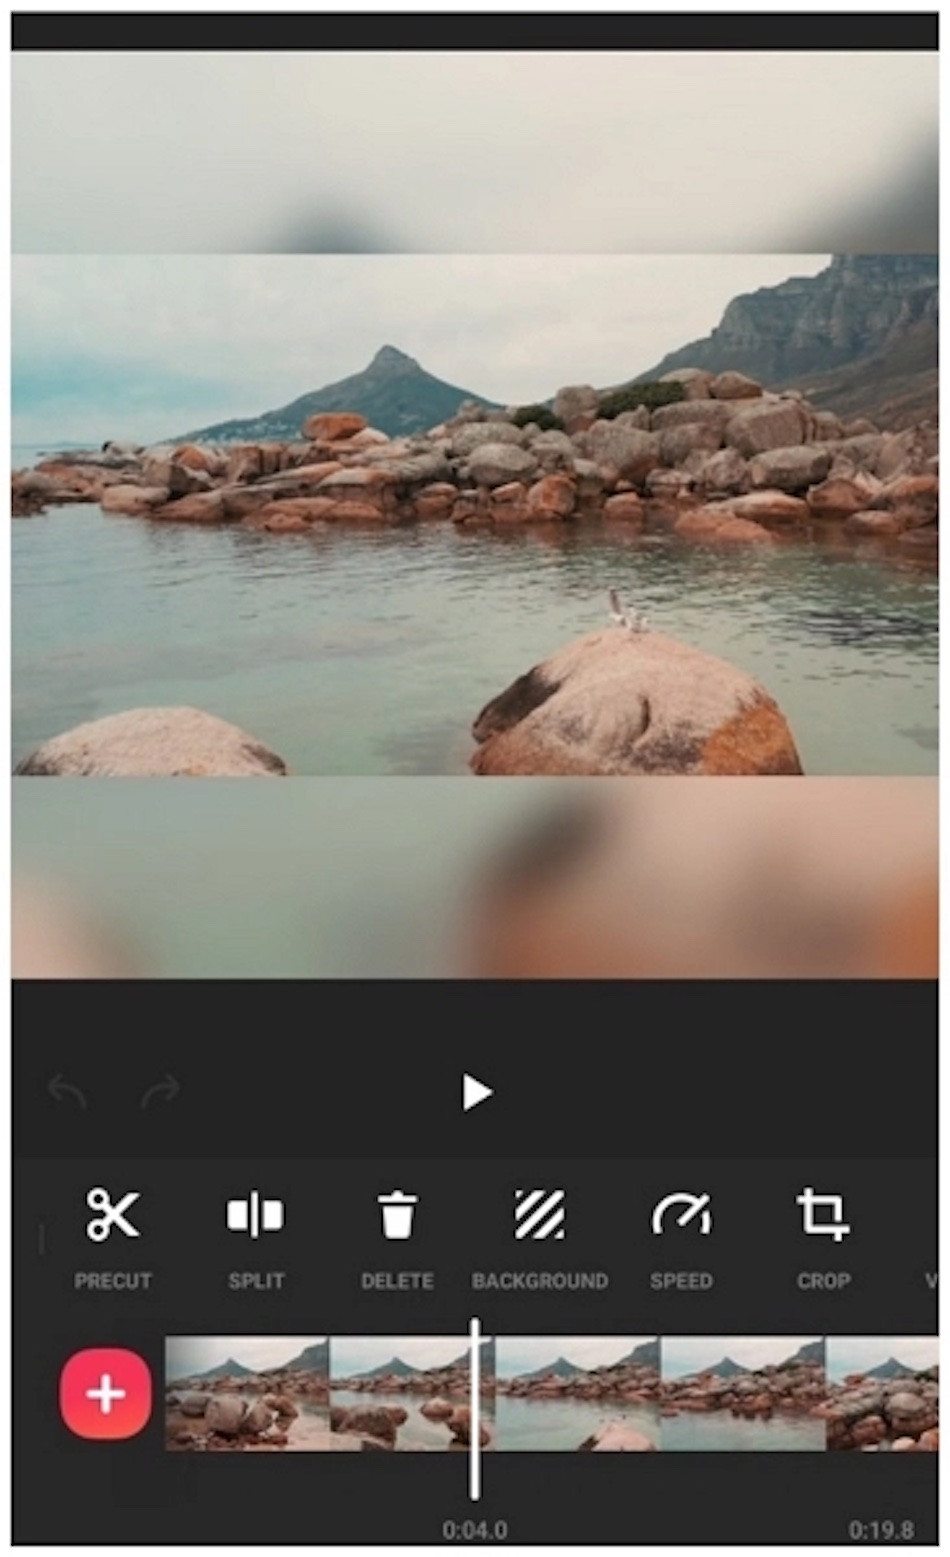 อินเทอร์เฟซแอปตัดต่อวิดีโอ InShot แสดงฉากชายหาดและส่วนควบคุมการแก้ไข